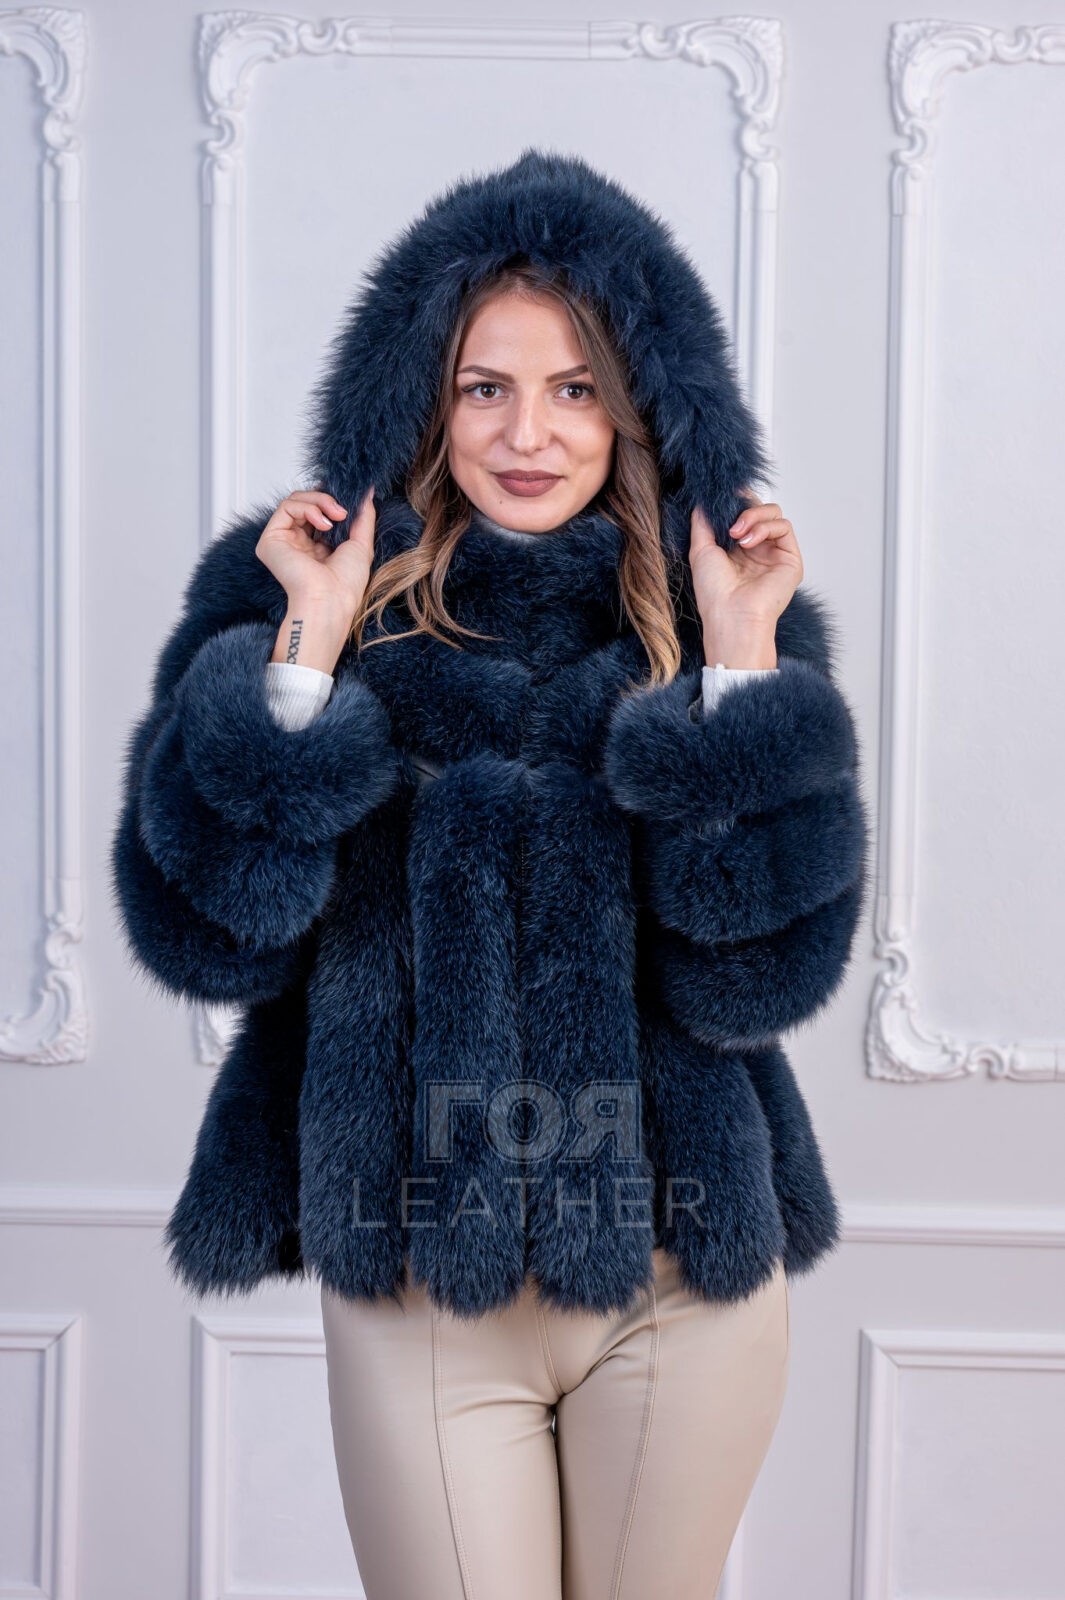 Луксозно палто от лисица с качулка от ГОЯ Leather. Нов модел палто от лисица с подвижни ръкави. Късо, вталено палто с въз можност да се носи и като елек.